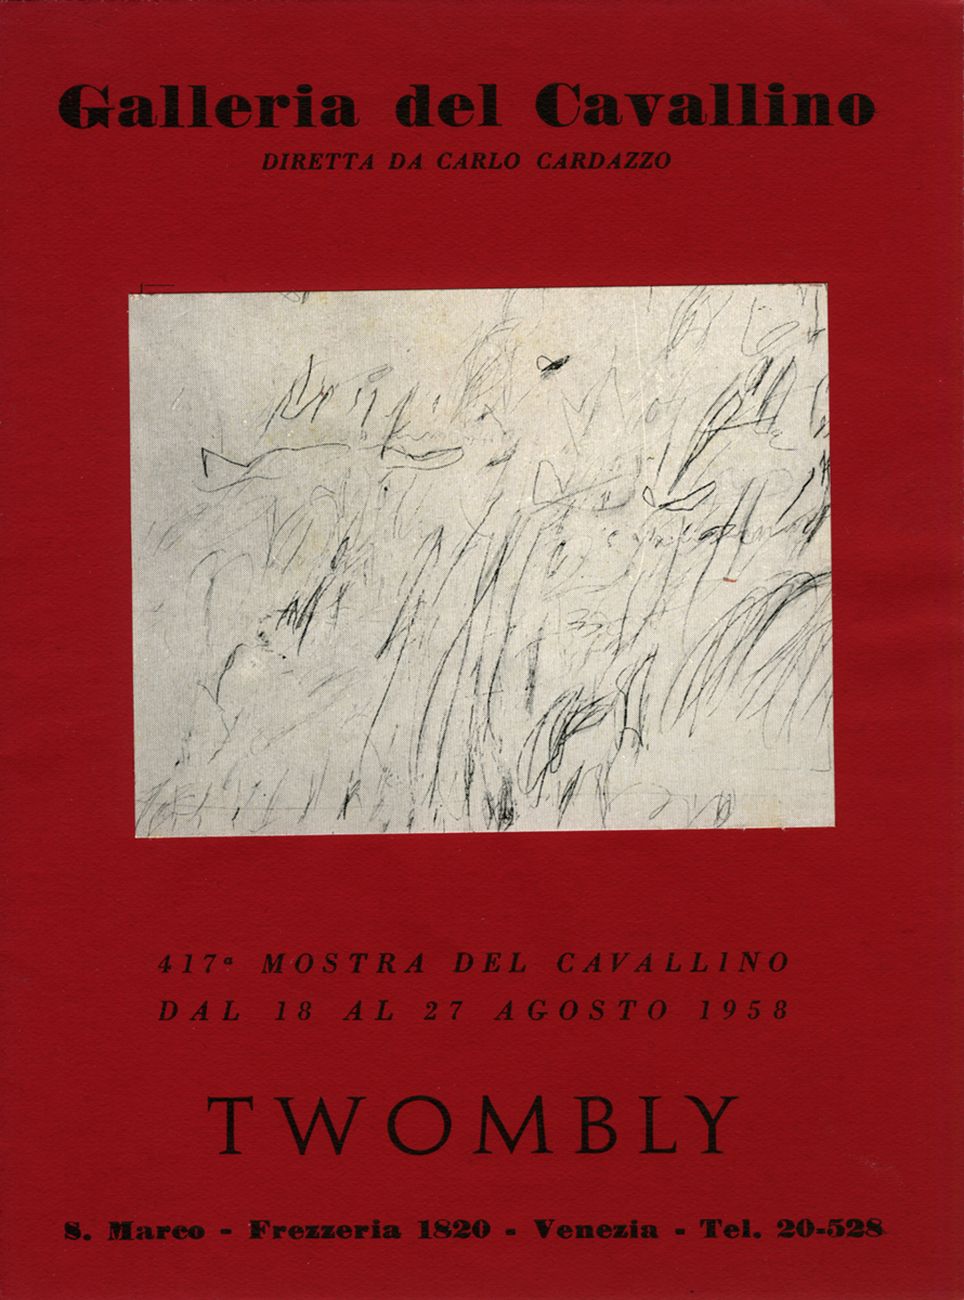 Locandina della mostra di Cy Twombly alla Galleria del Cavallino, Venezia 1958